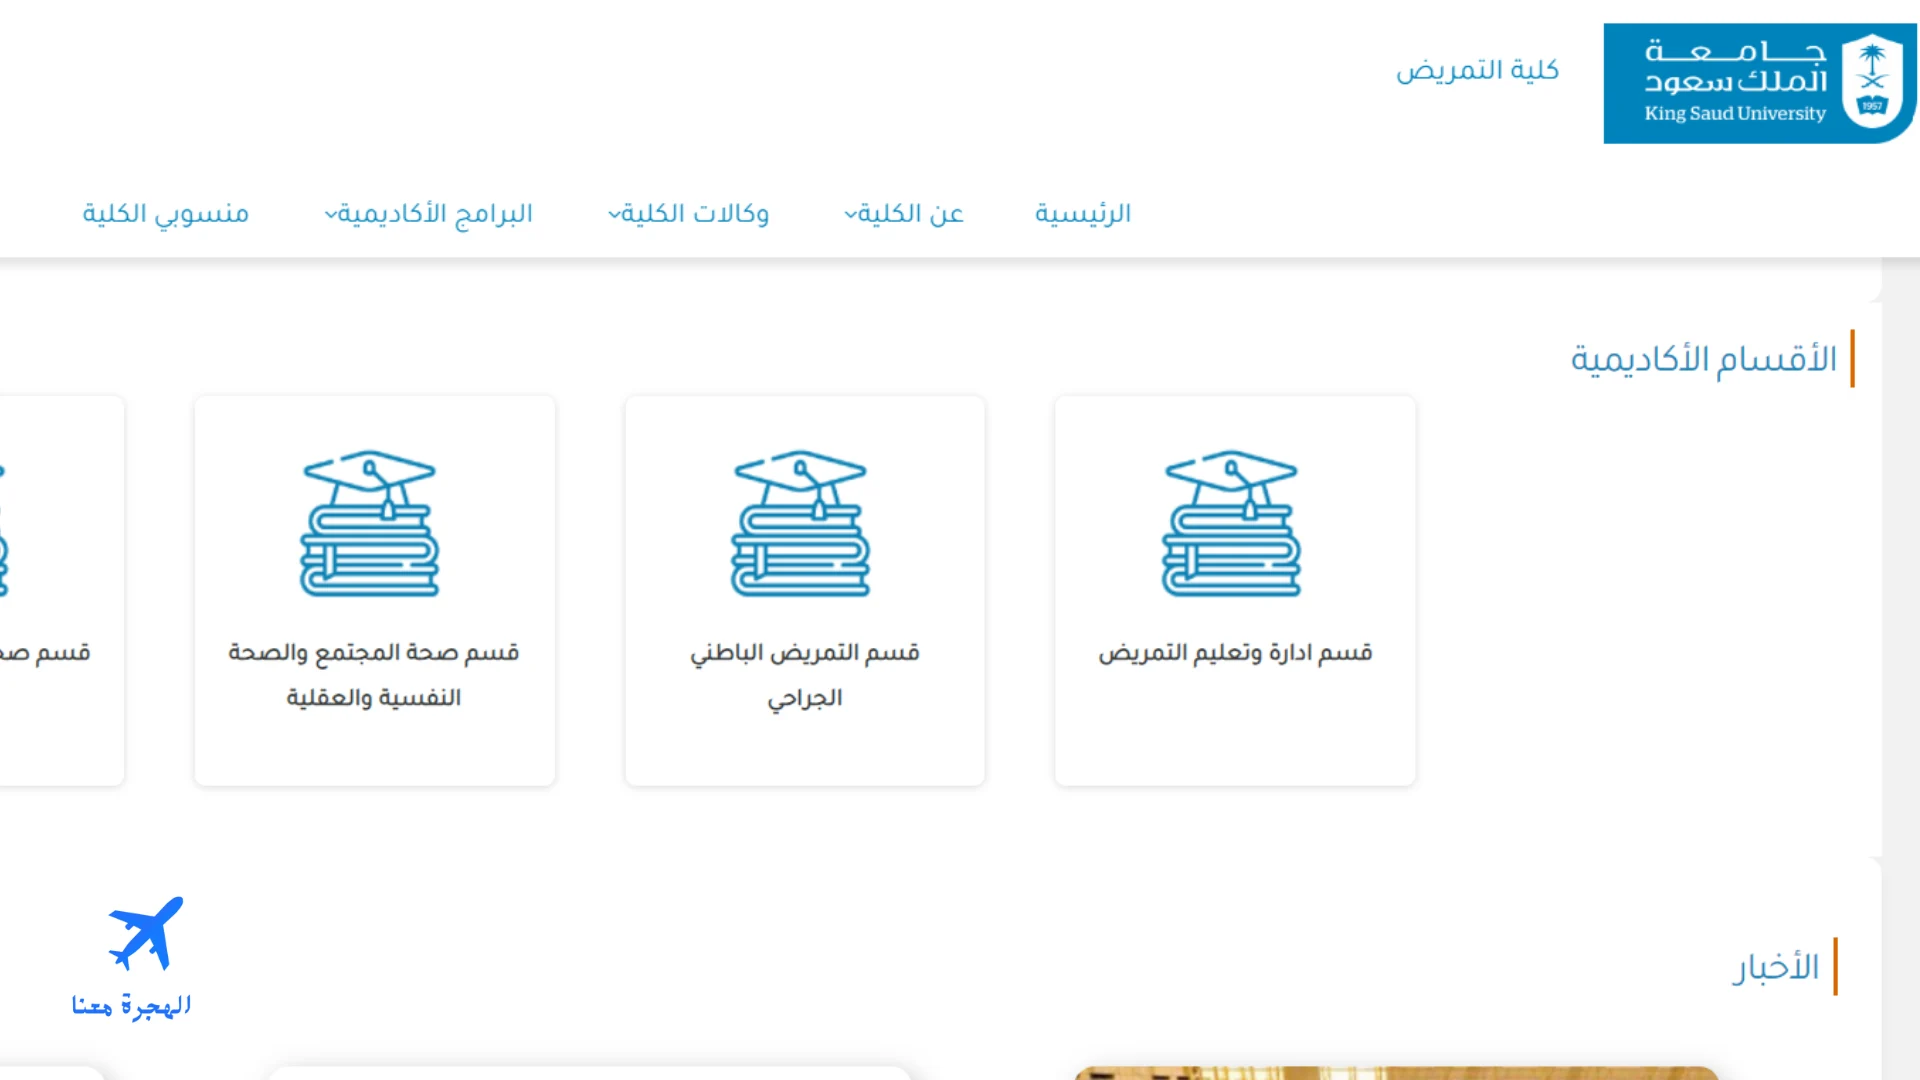 صورة من الموقع الإلكتروني لكلية التمريض جامعة الملك سعود